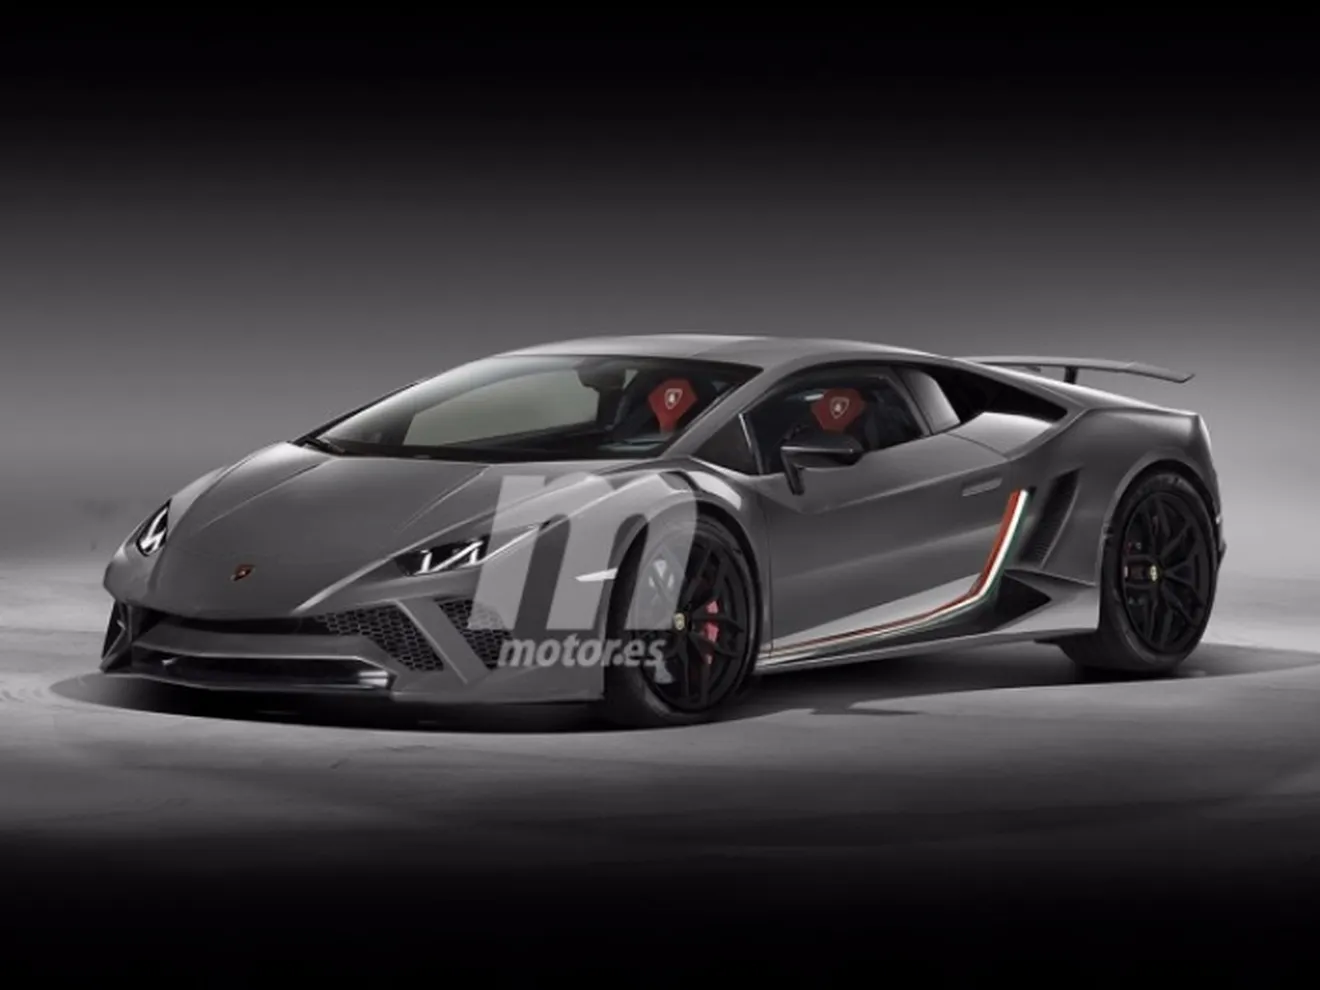 Oficial: El Huracán Performante será el Lamborghini más rápido y estará en Ginebra 2017   